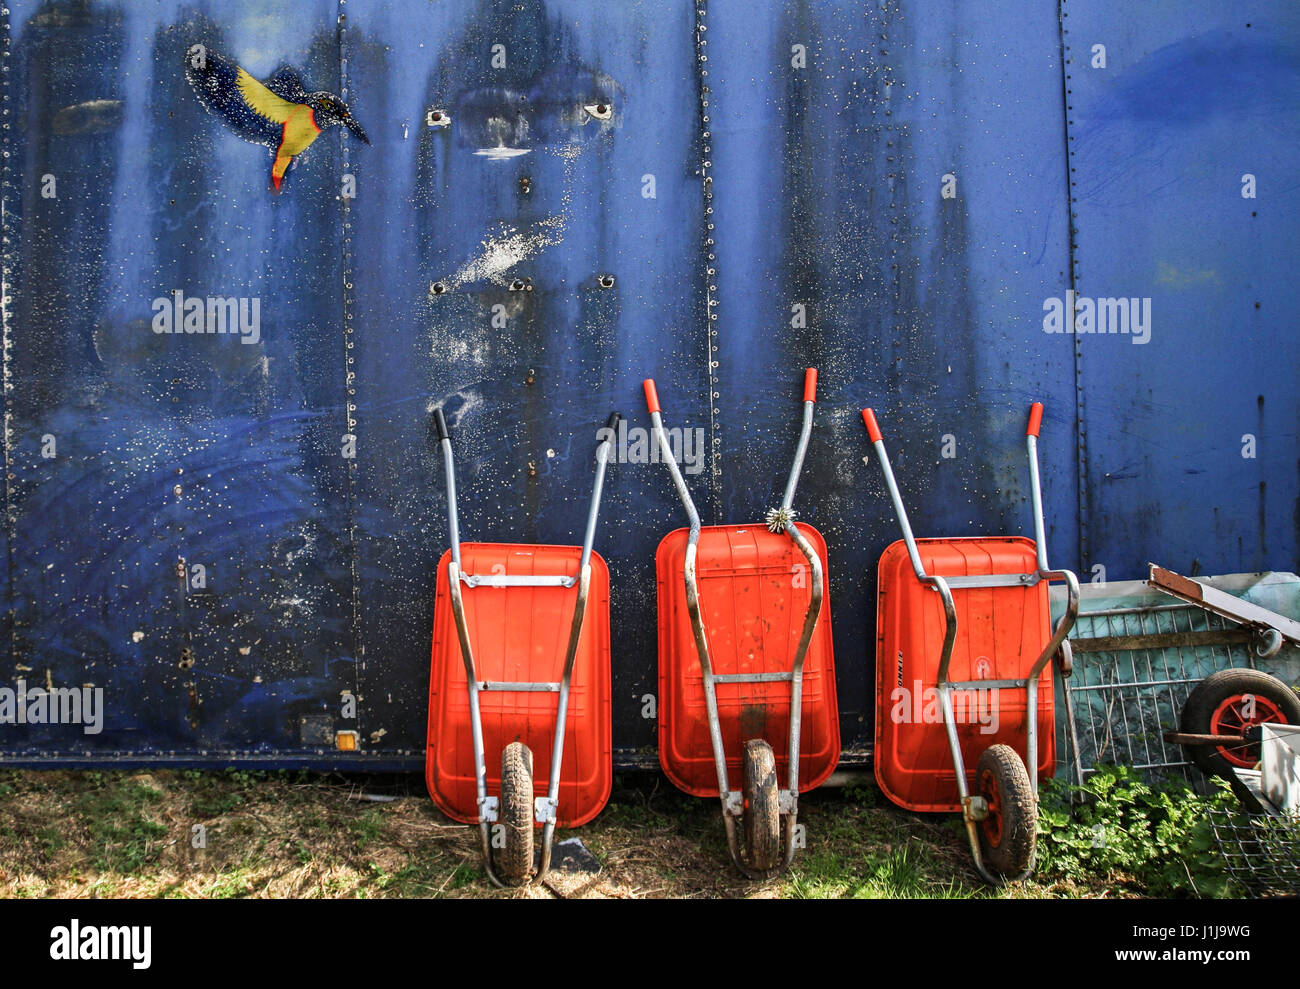 3 carretillas y aparcada una kingfisher en una asignación Foto de stock